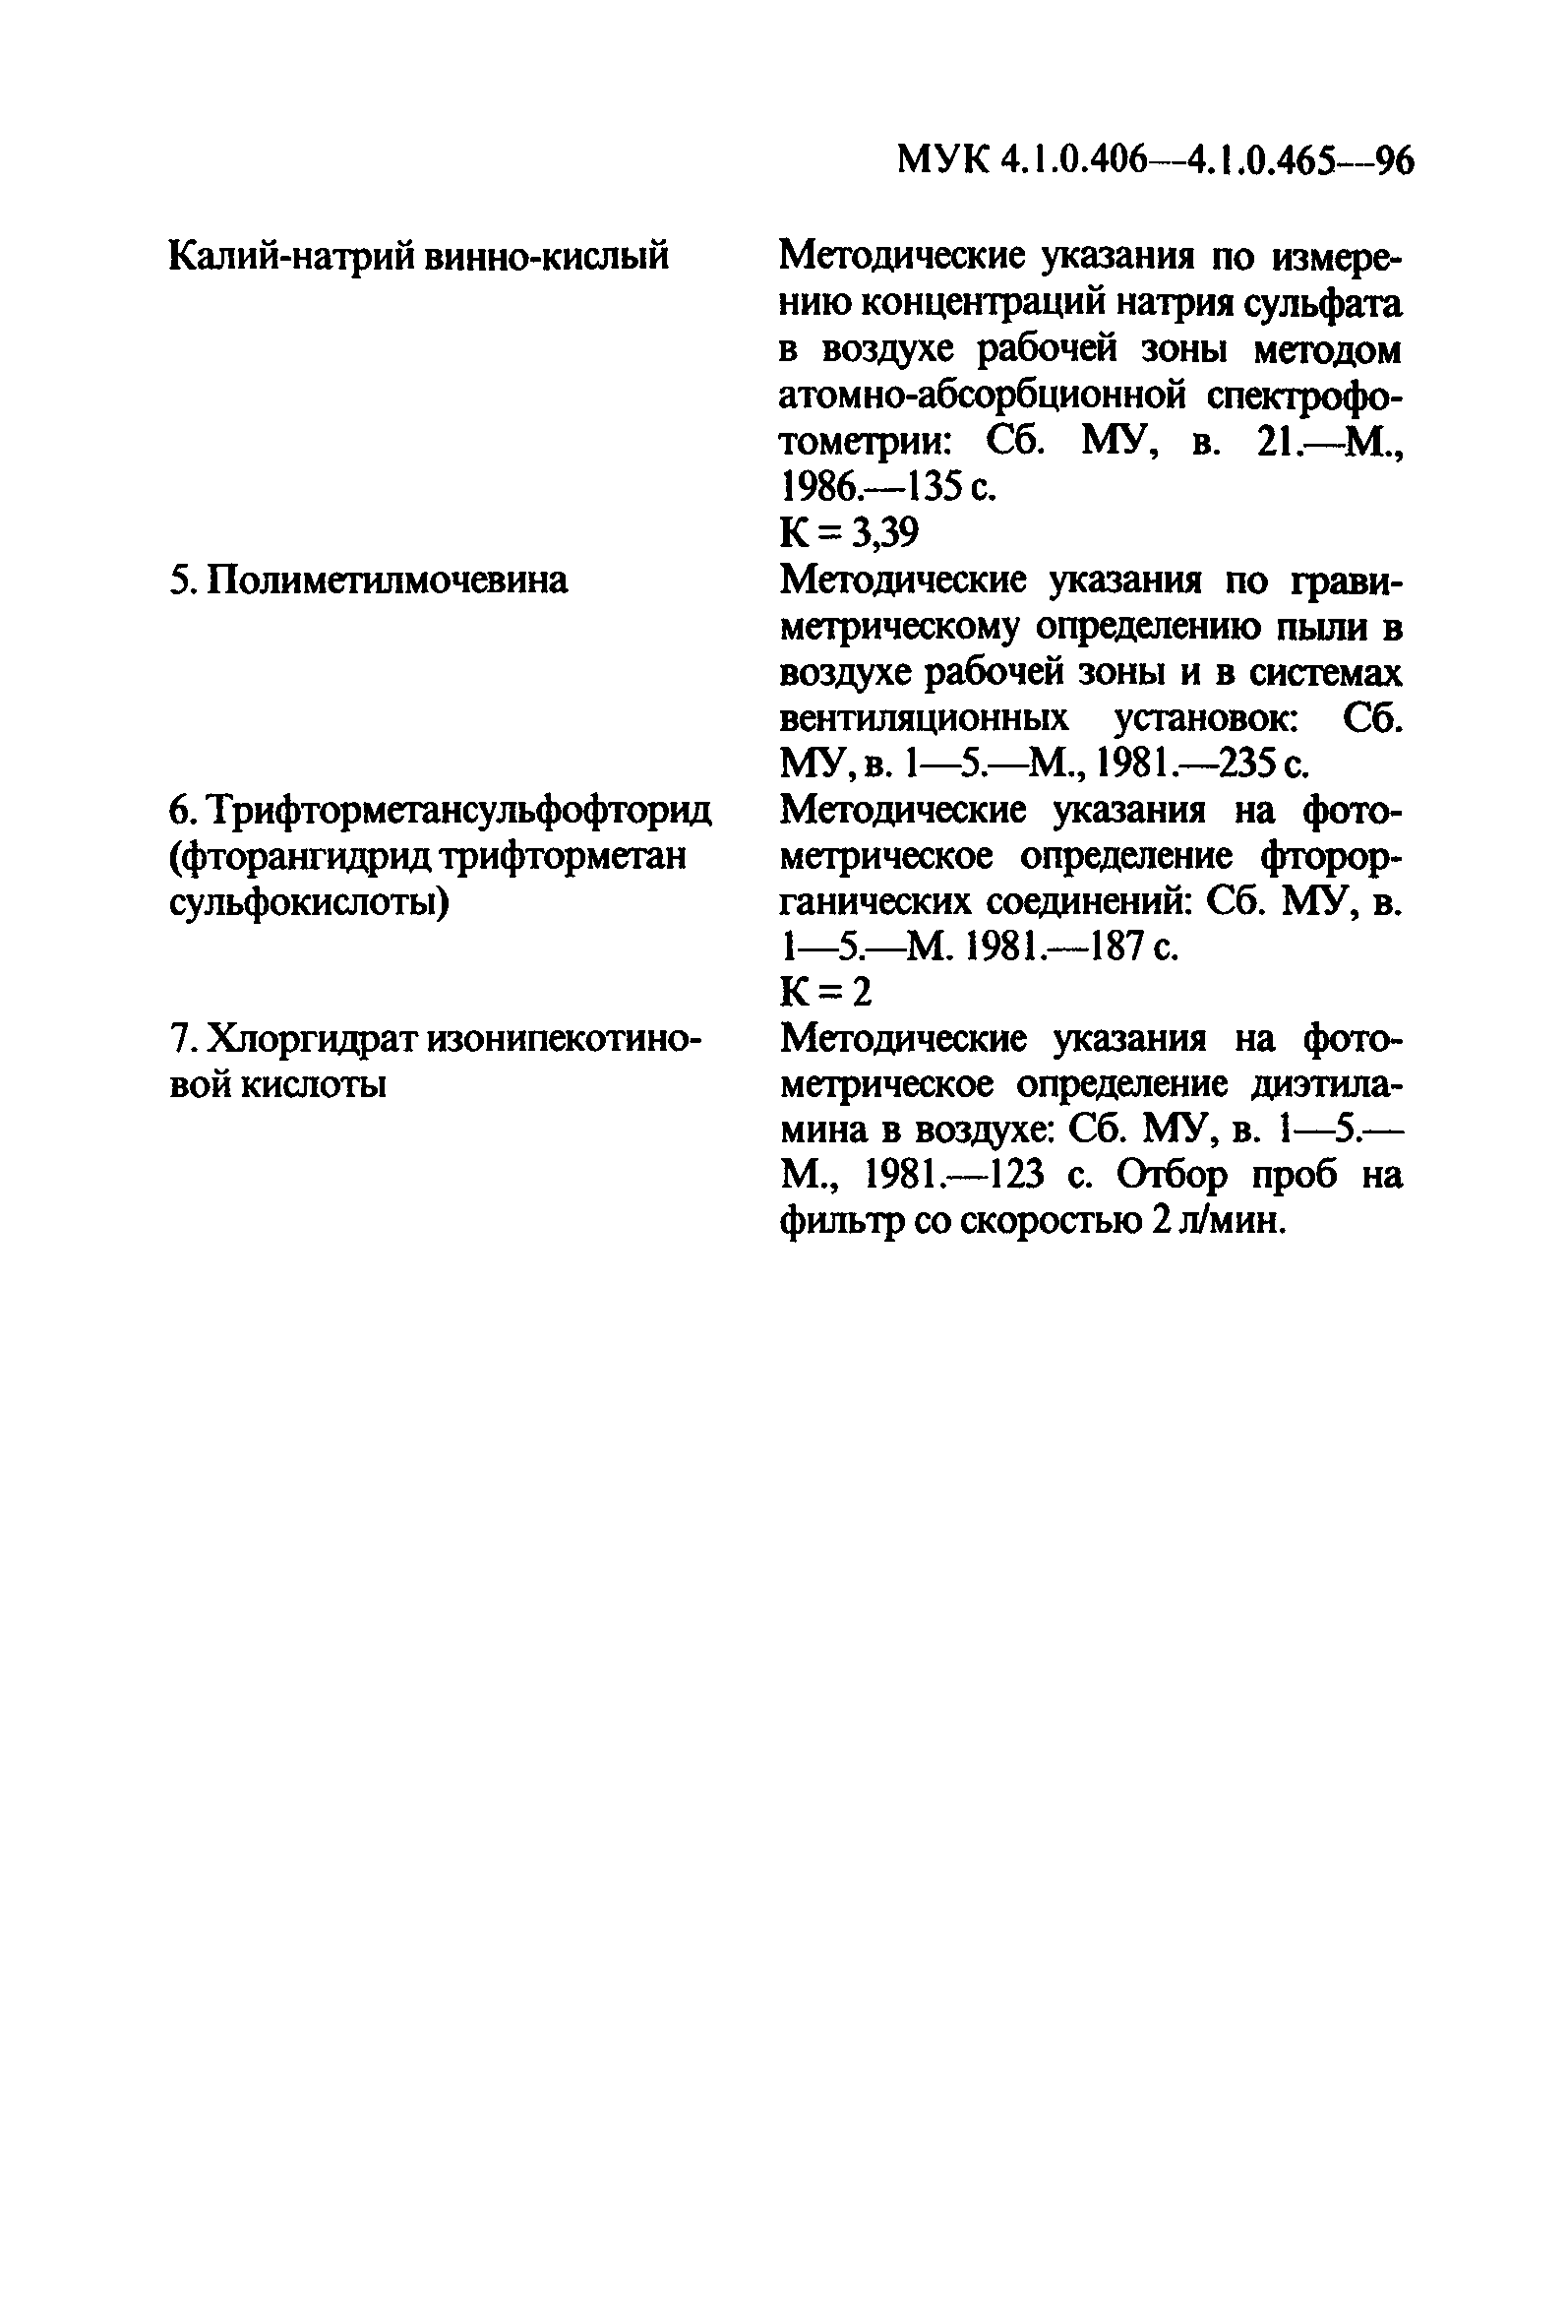 МУК 4.1.0.407-96